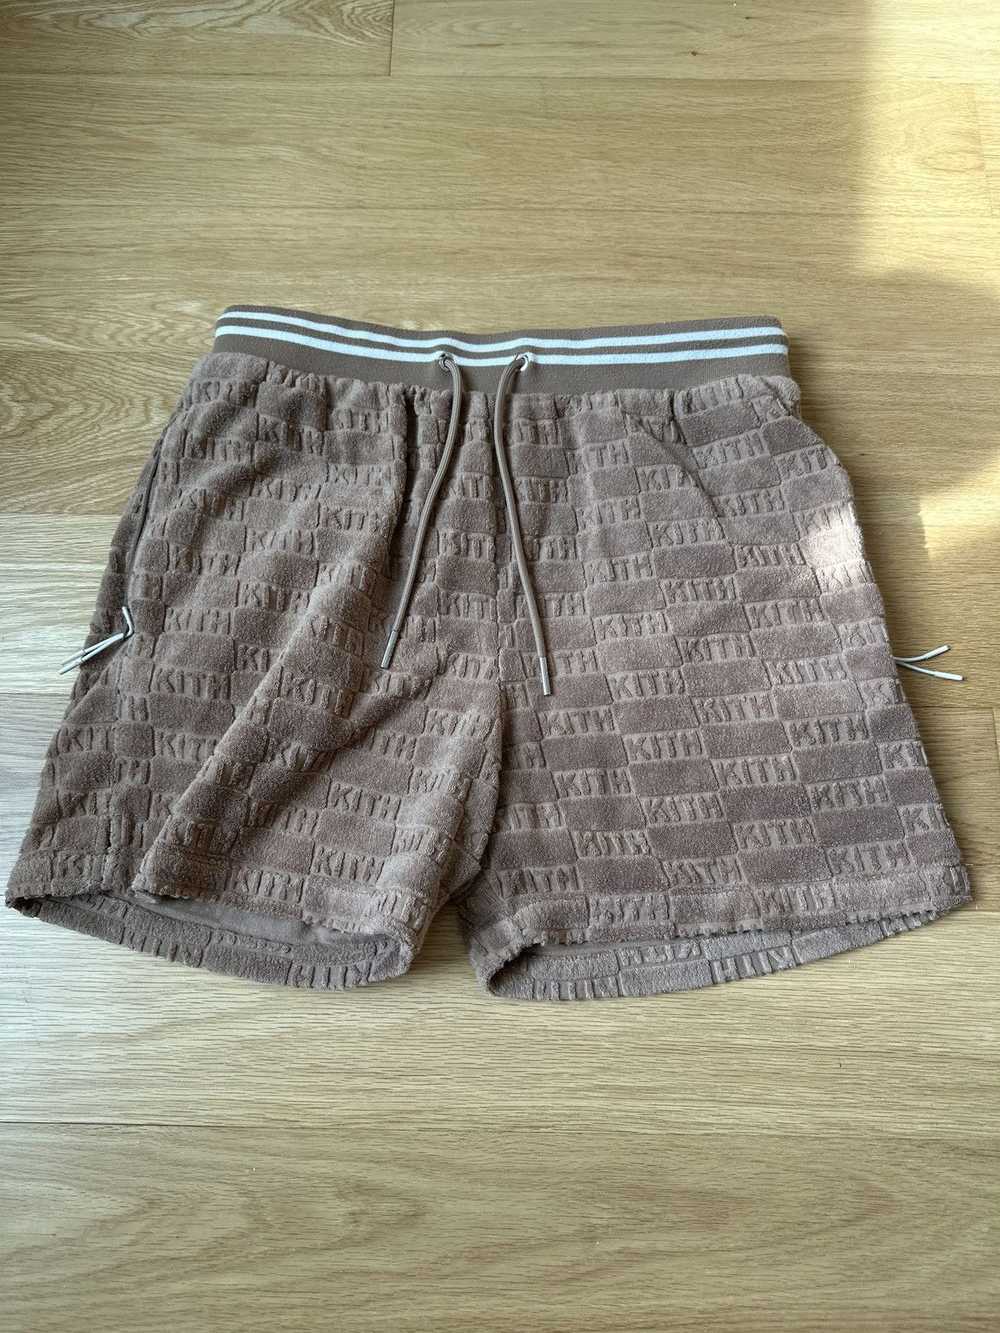 Kith Kith Terry Cloth Shorts - image 1